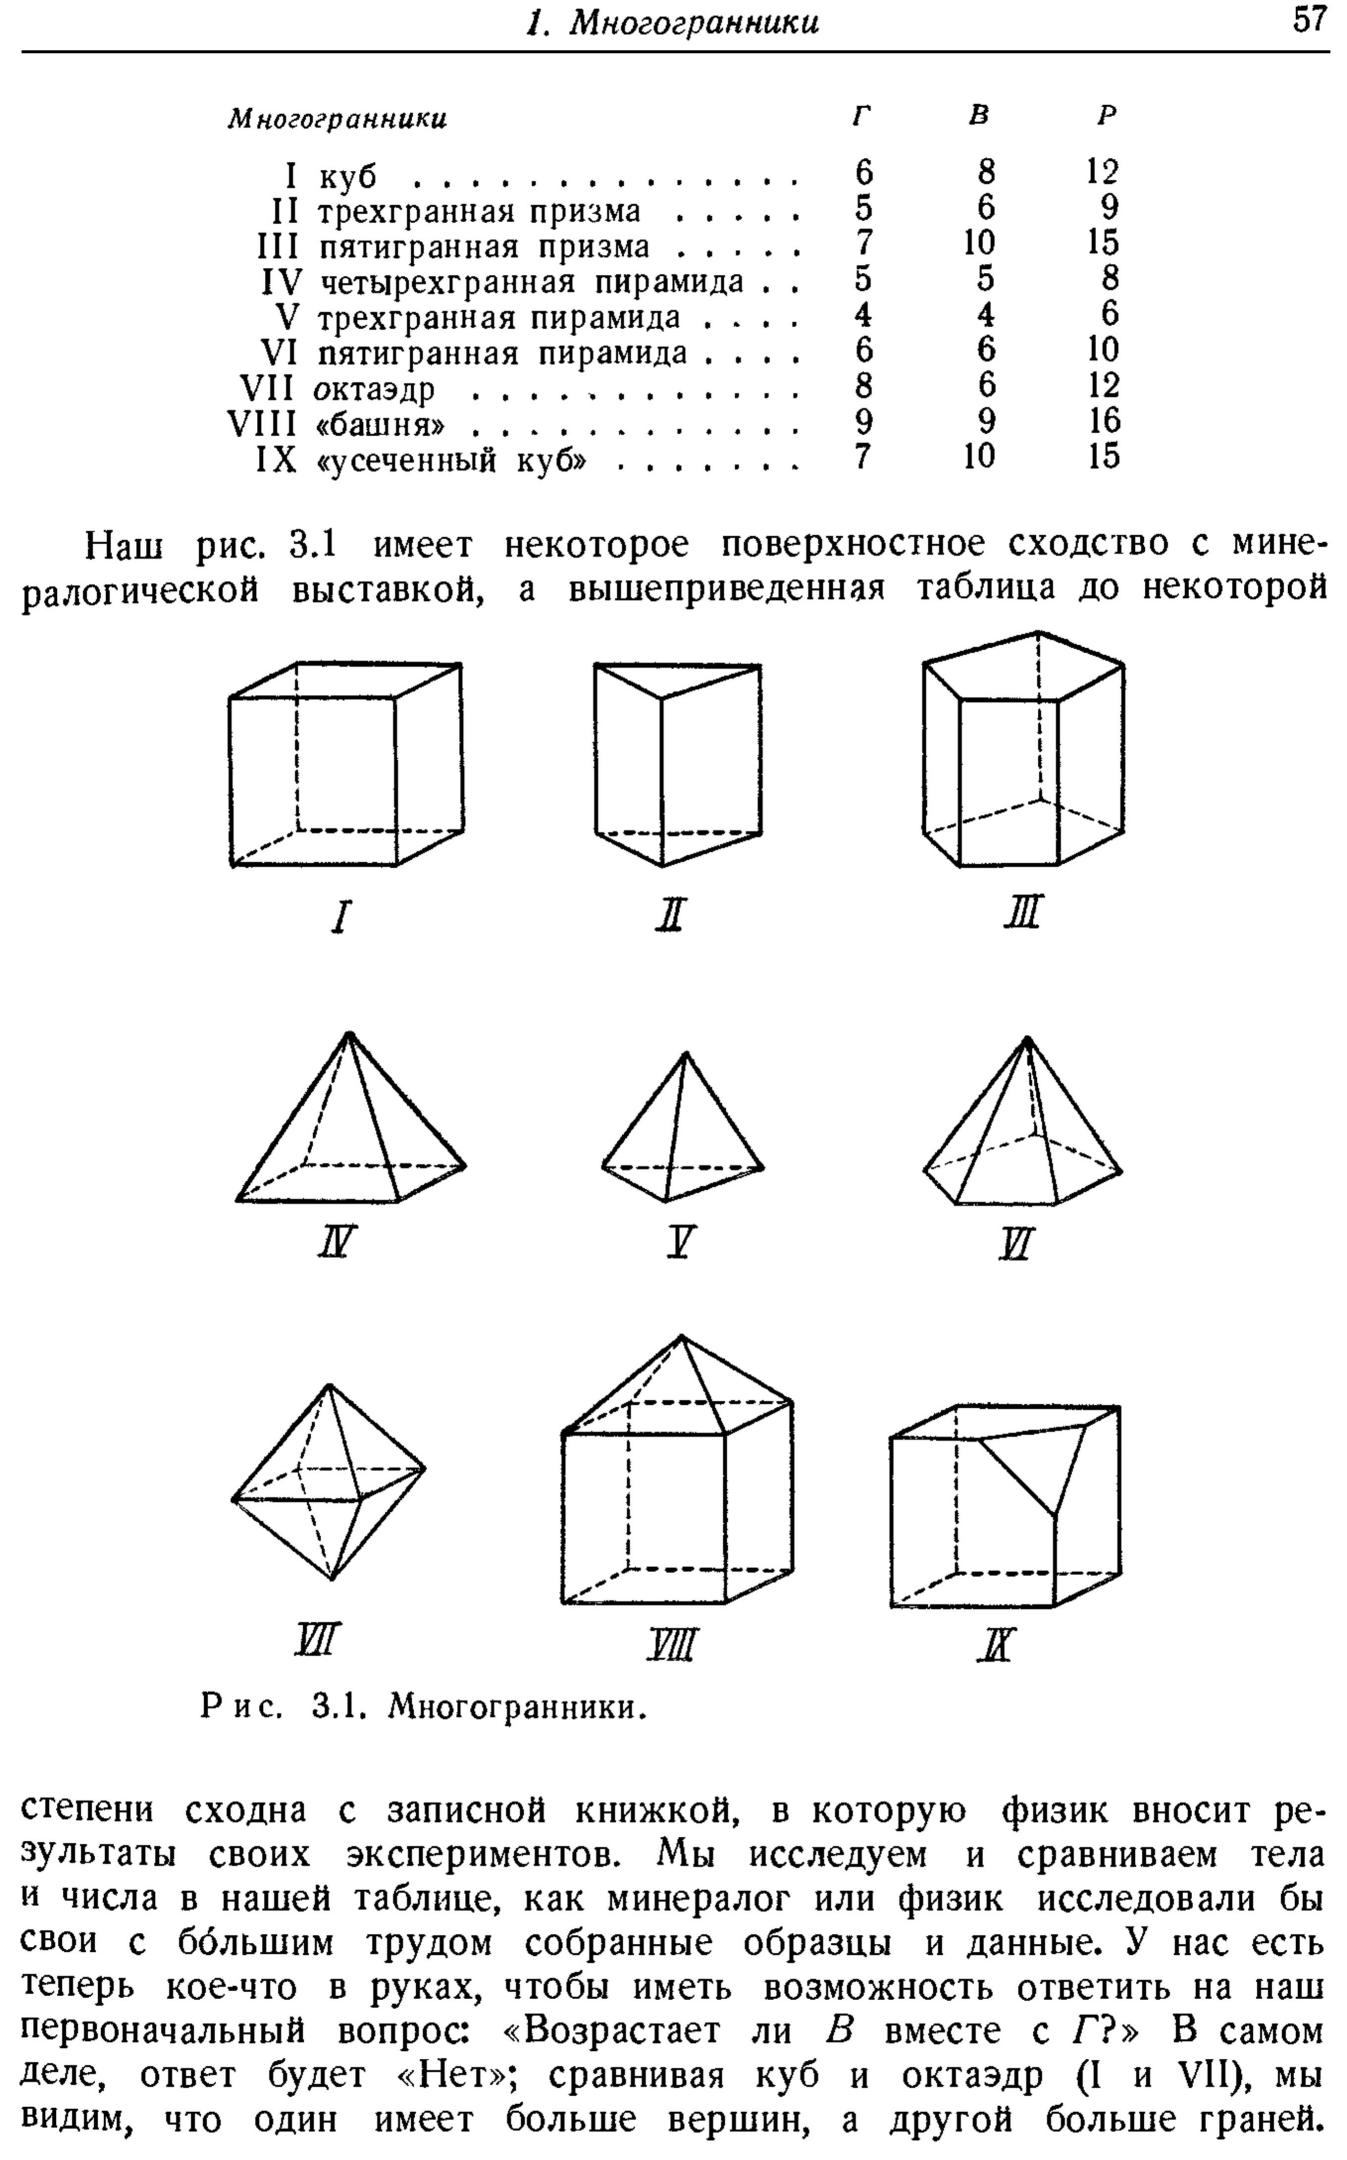 Пирамида тест 10 класс с ответами. Тест 4 многогранники Призма 10 класс ответы. Зачет по геометрии 10 класс Призма и пирамида. Тест 4 многогранники Призма 10 класс ответы вариант 1. Тест 4 многогранники Призма.